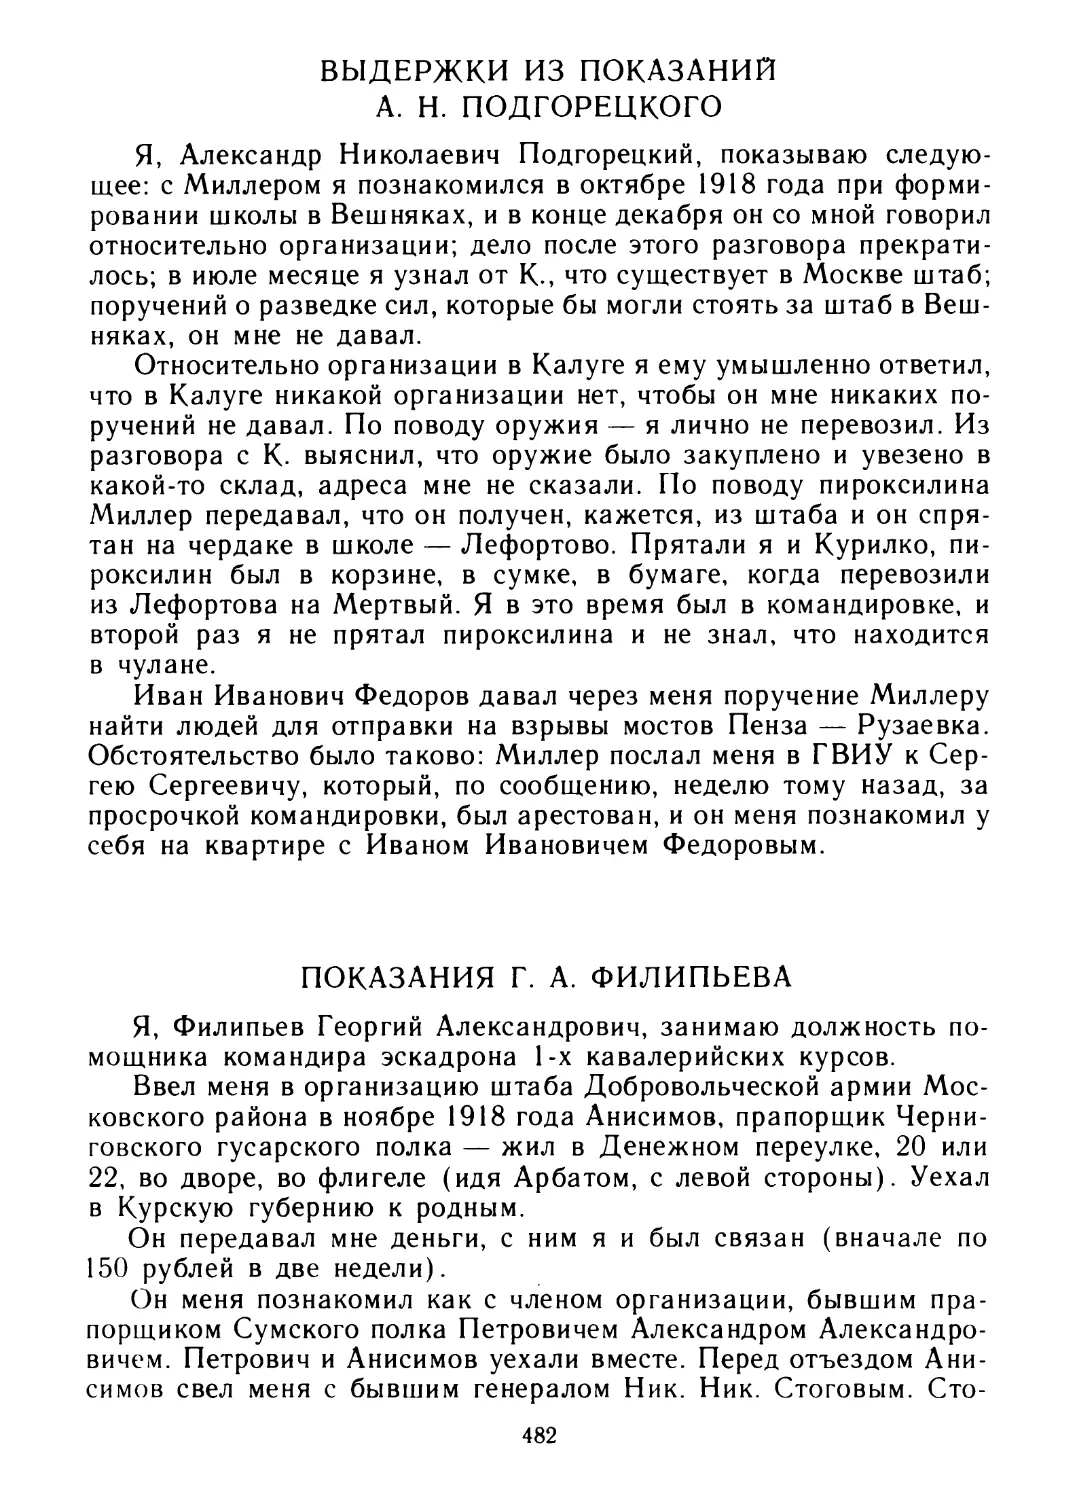 Выдержки из показаний А. Н. Подгорецкого
Показания Г. А. Филипьева